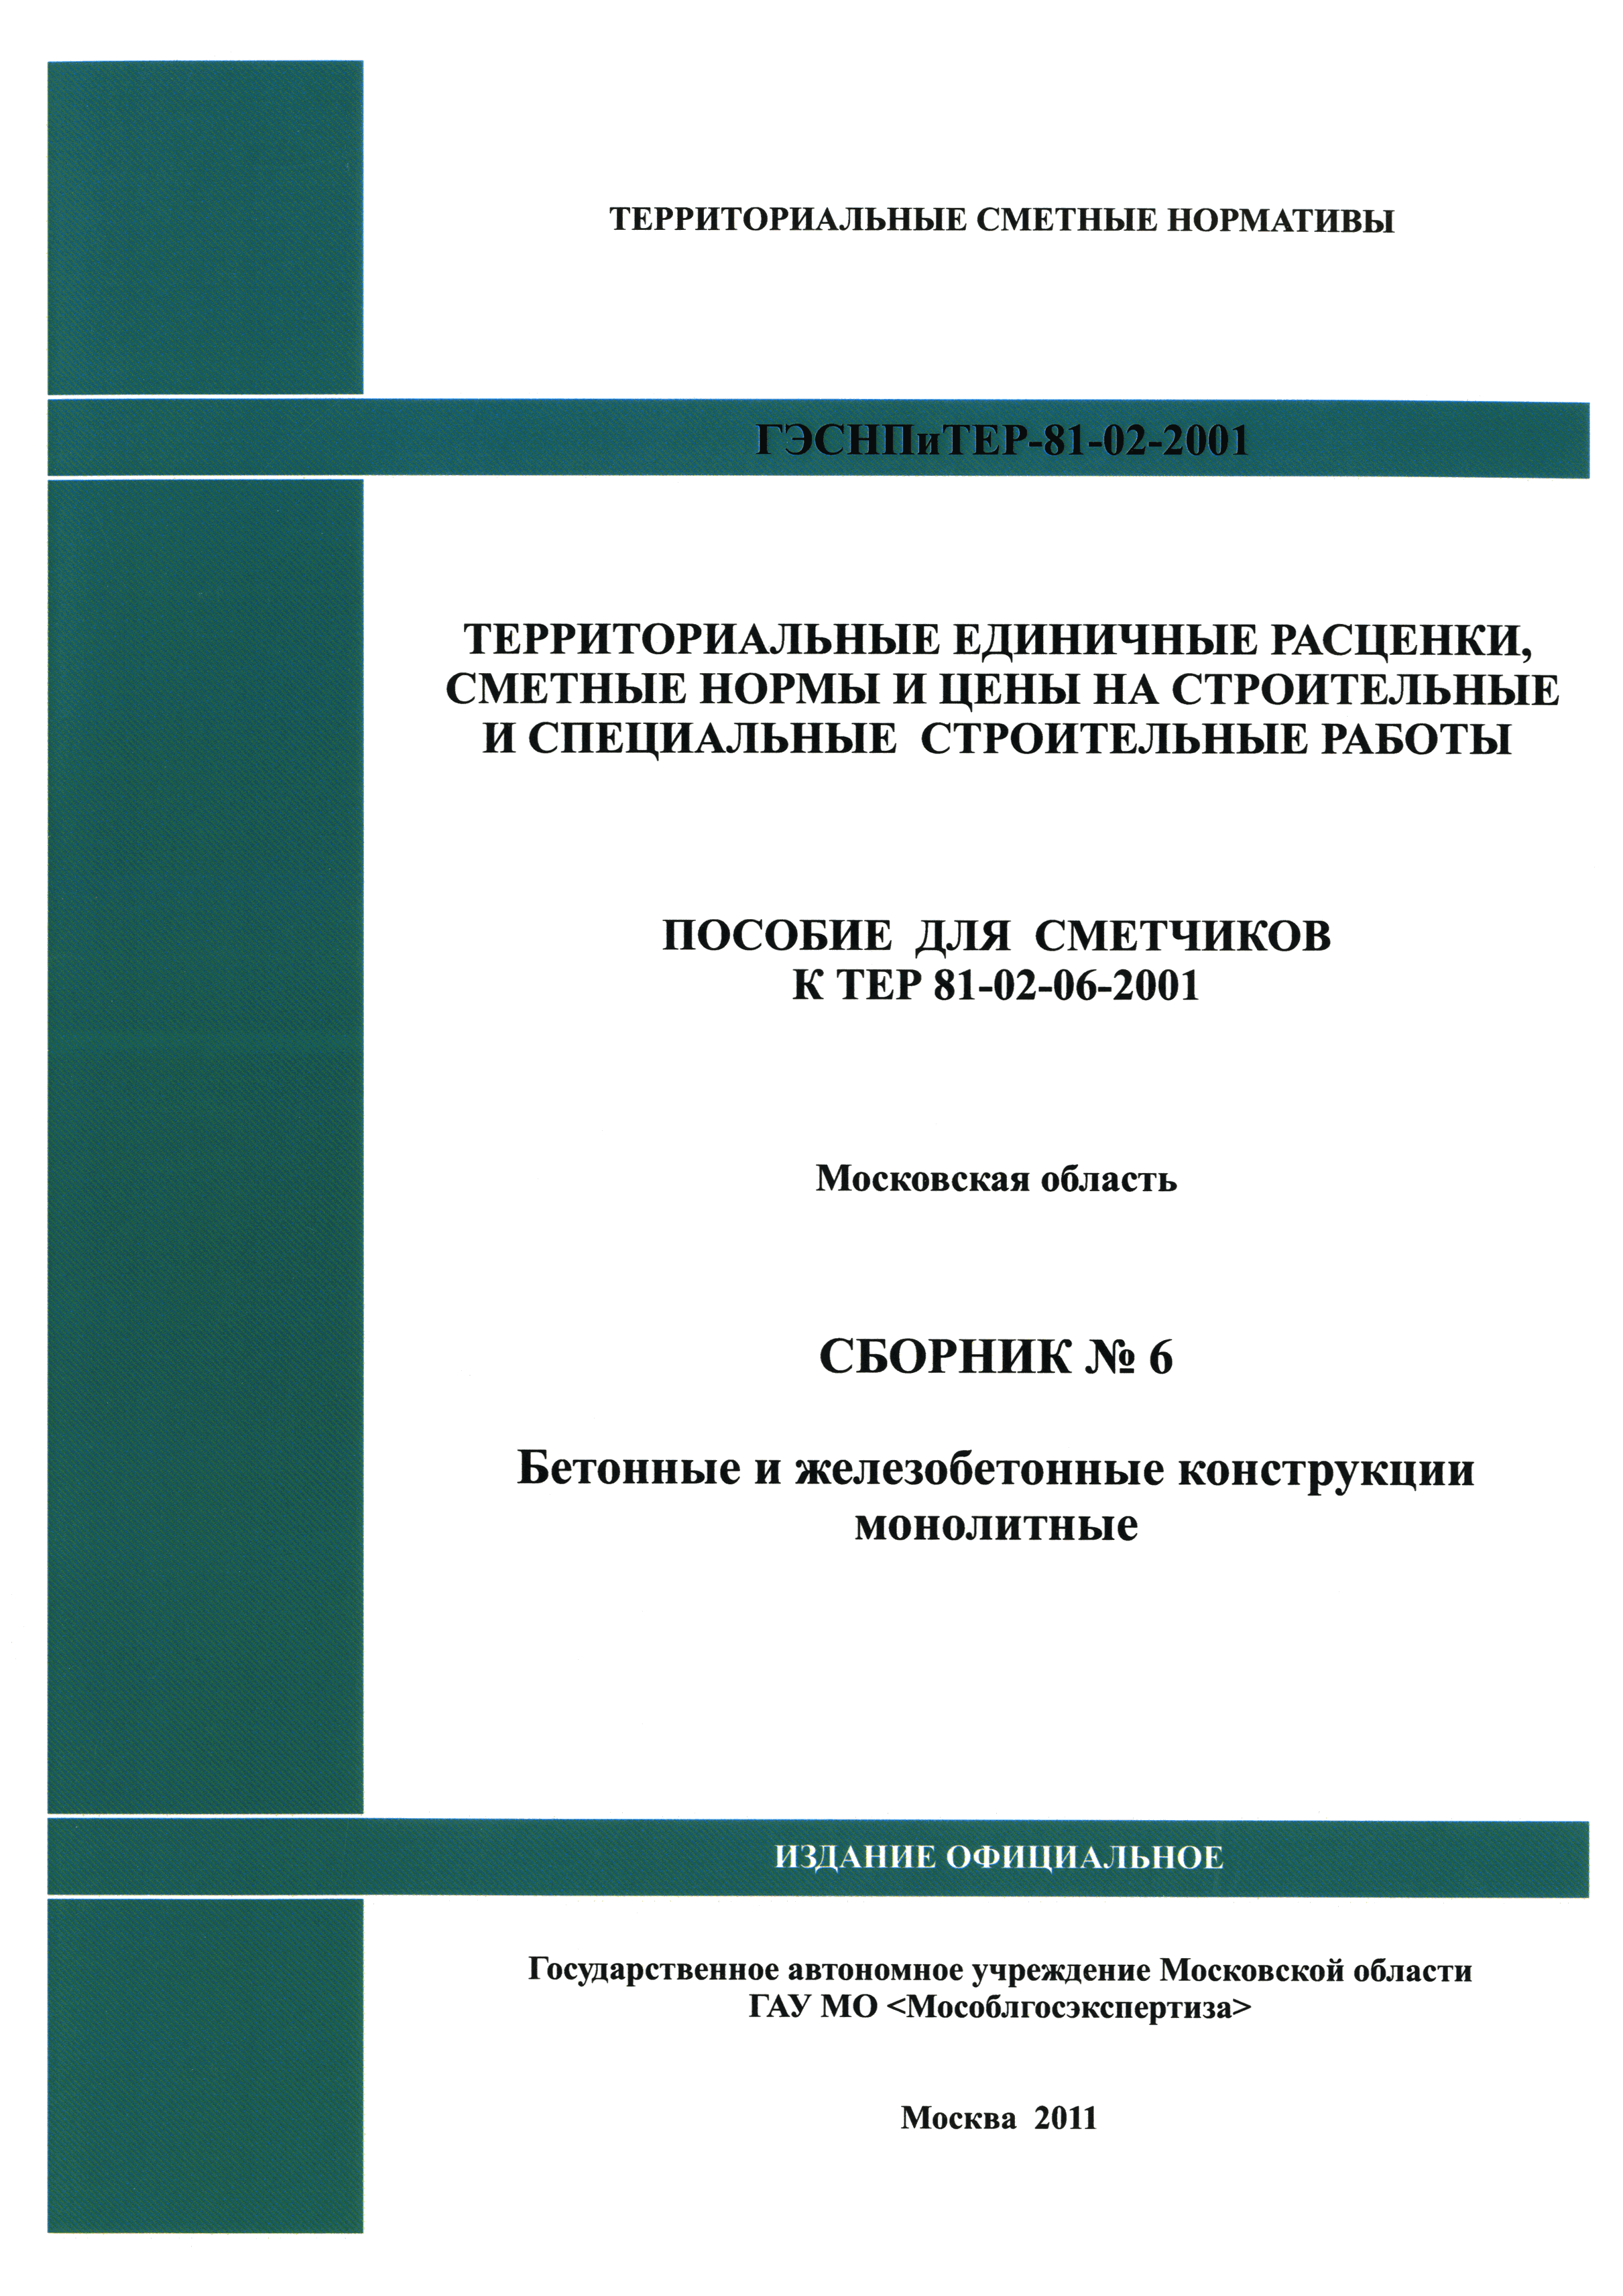 ГЭСНПиТЕР 2001-6 Московской области